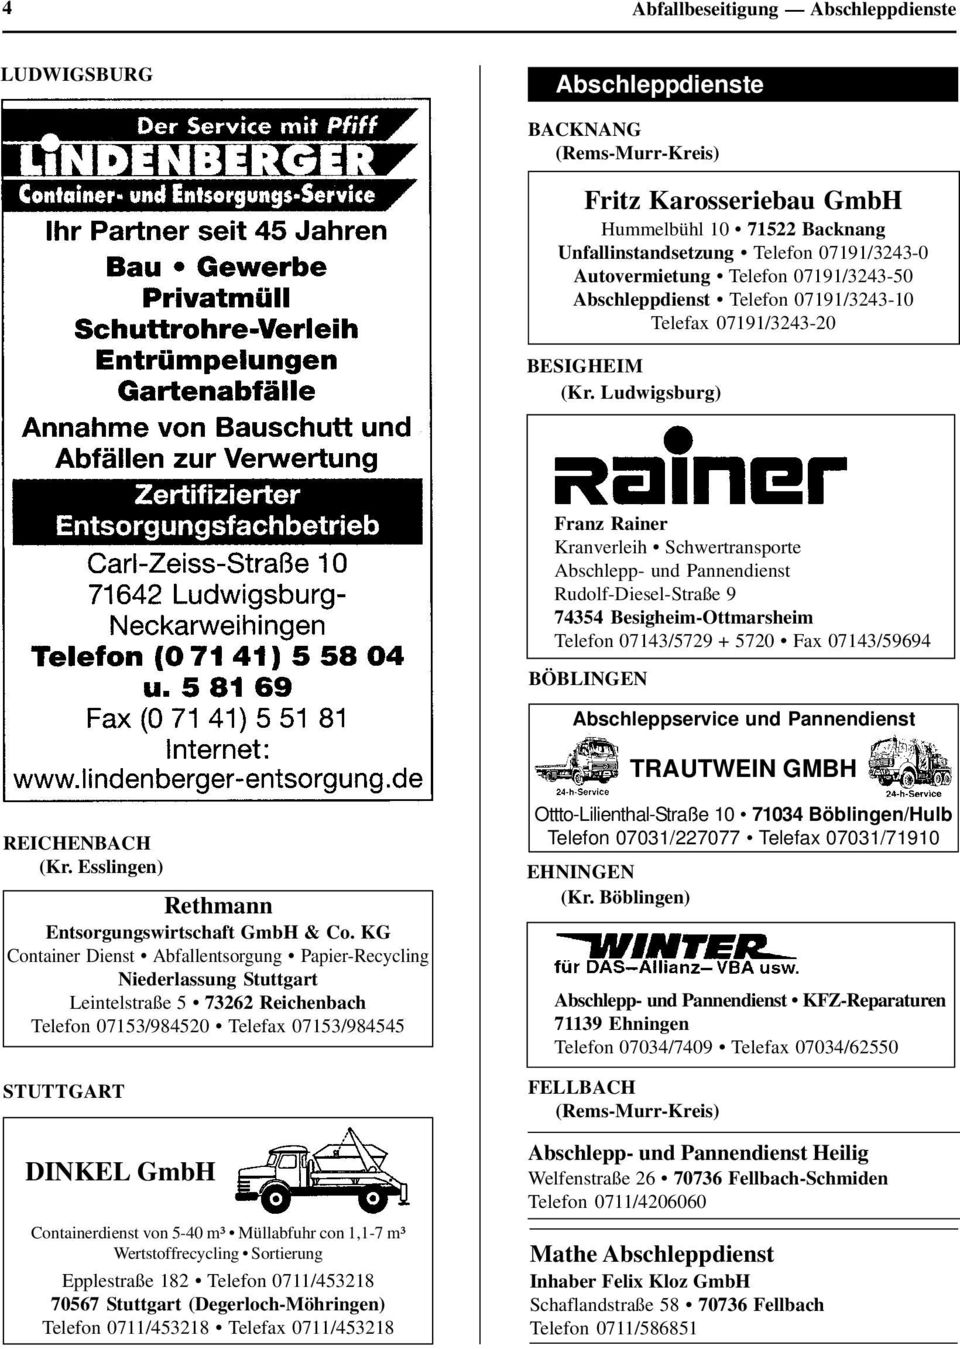 Besigheim-Ottmarsheim Telefon 07143/5729 + 5720 Fax 07143/59694 BÖBLINGEN Abschleppservice und Pannendienst TRAUTWEIN GMBH REICHENBACH Rethmann Entsorgungswirtschaft GmbH & Co.